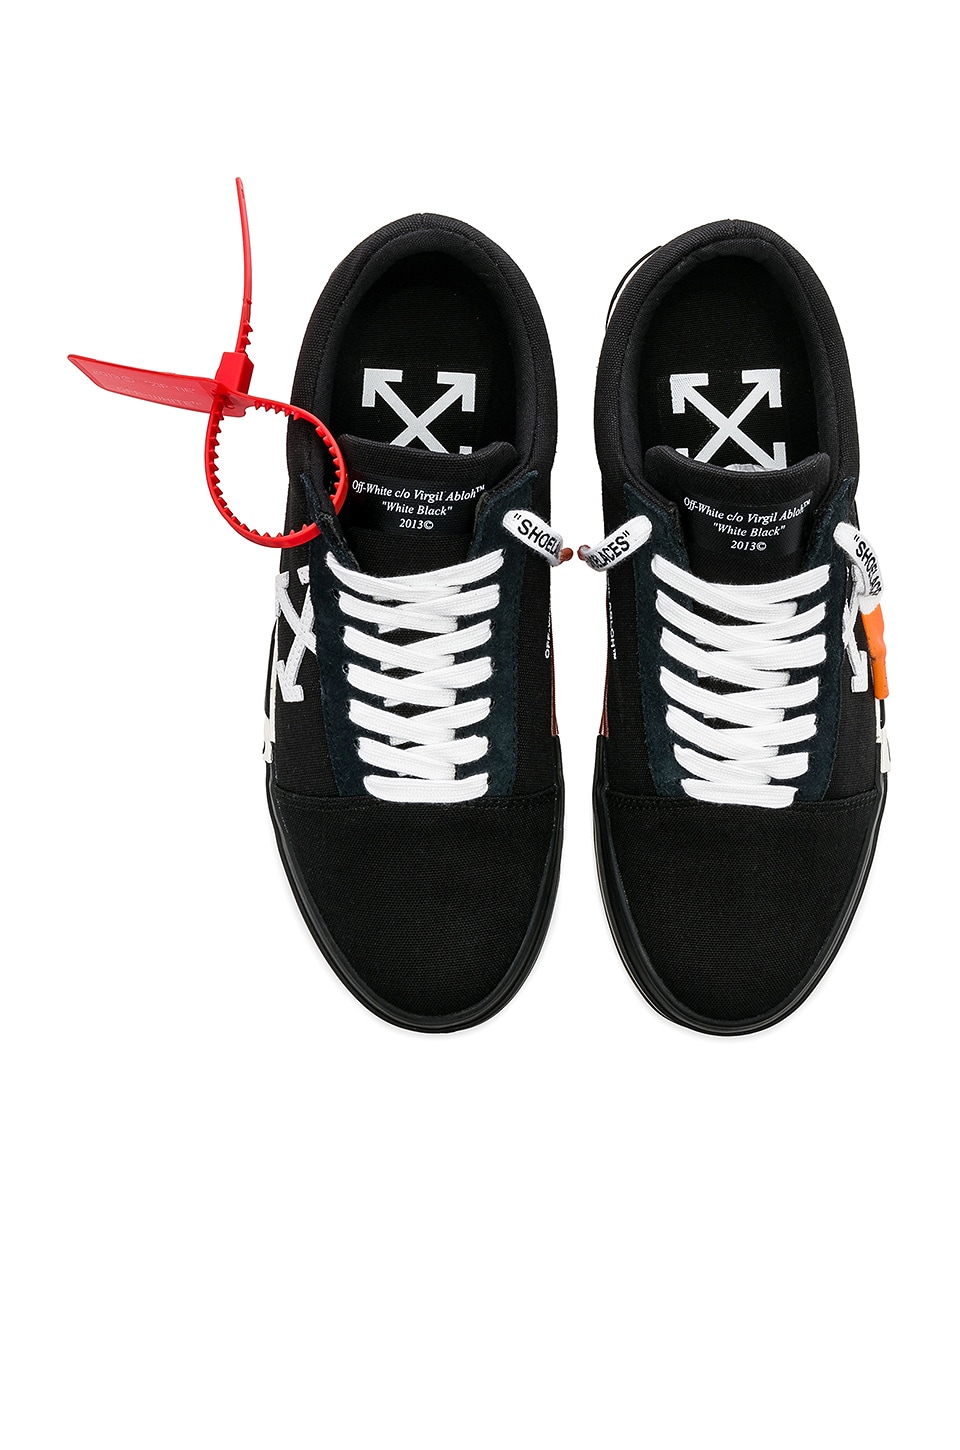 OFF-WHITE Vulc Low Sneaker in Black | REVOLVE